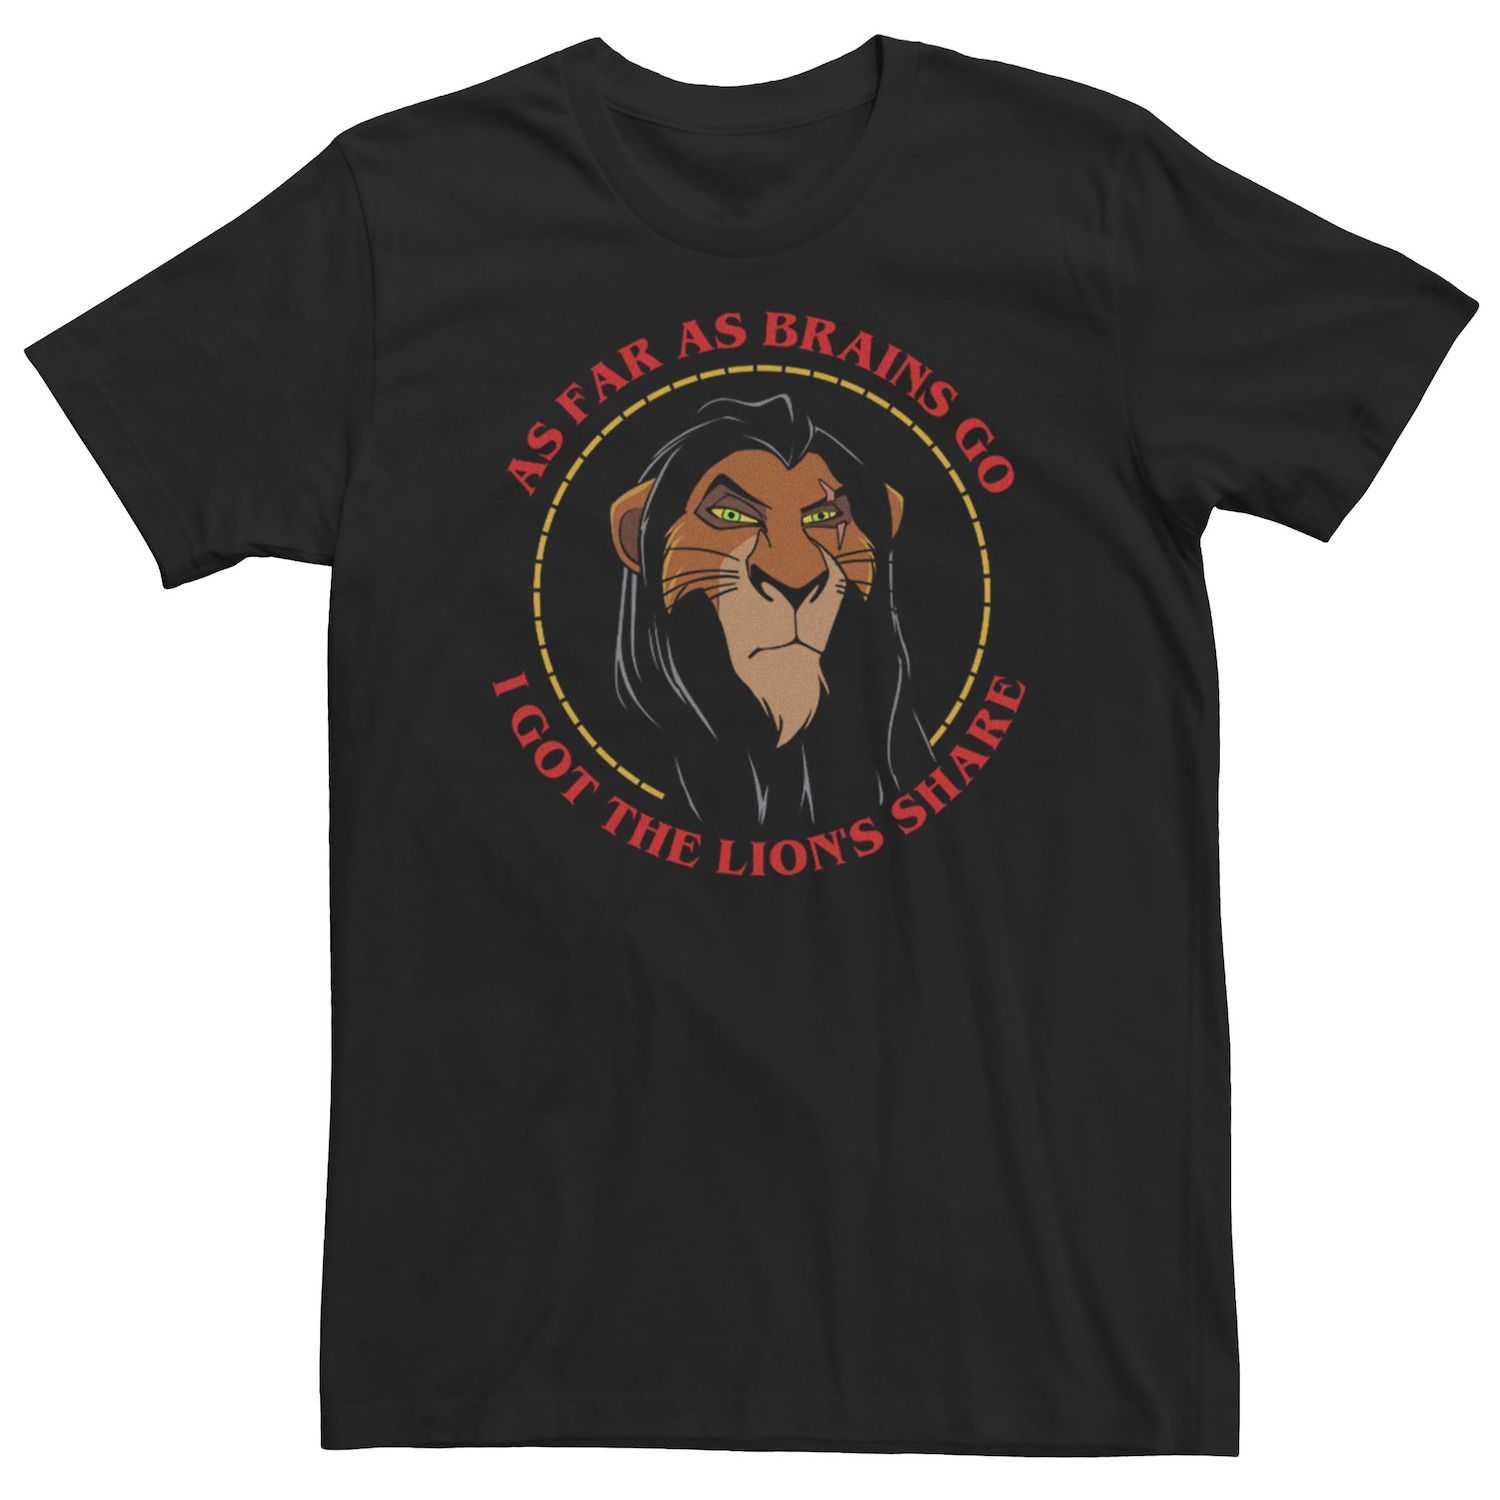 Мужская футболка со шрамом «Король Лев» Насколько мозги идут I Got Lions Share Disney